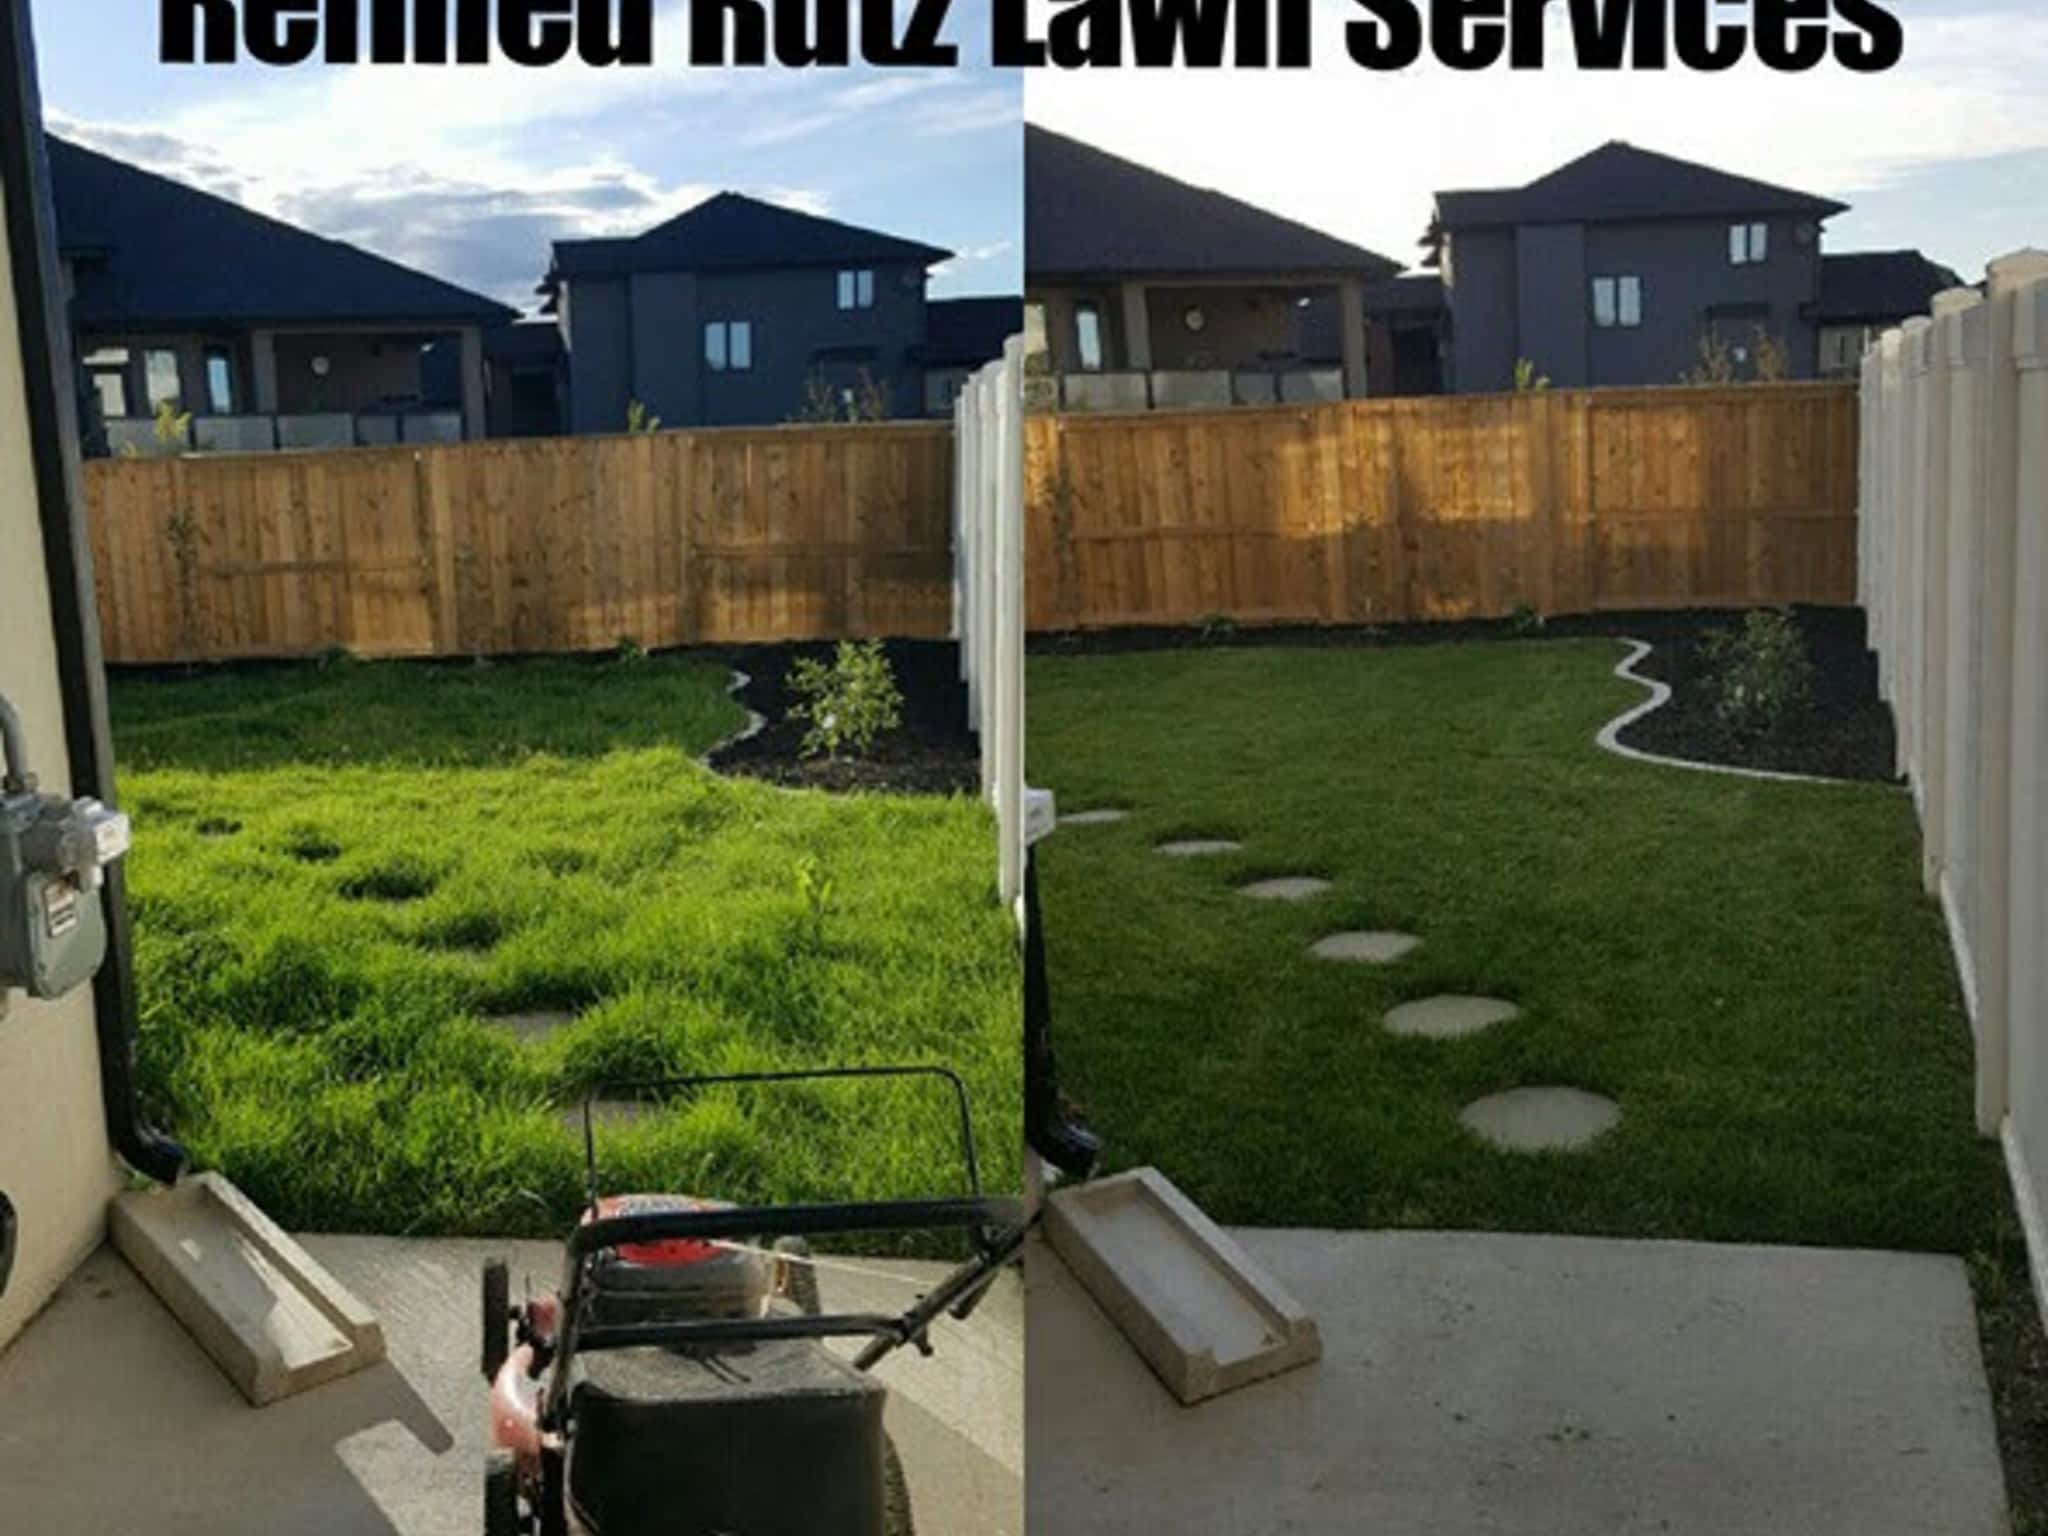 photo Refined Rutz Lawn Services